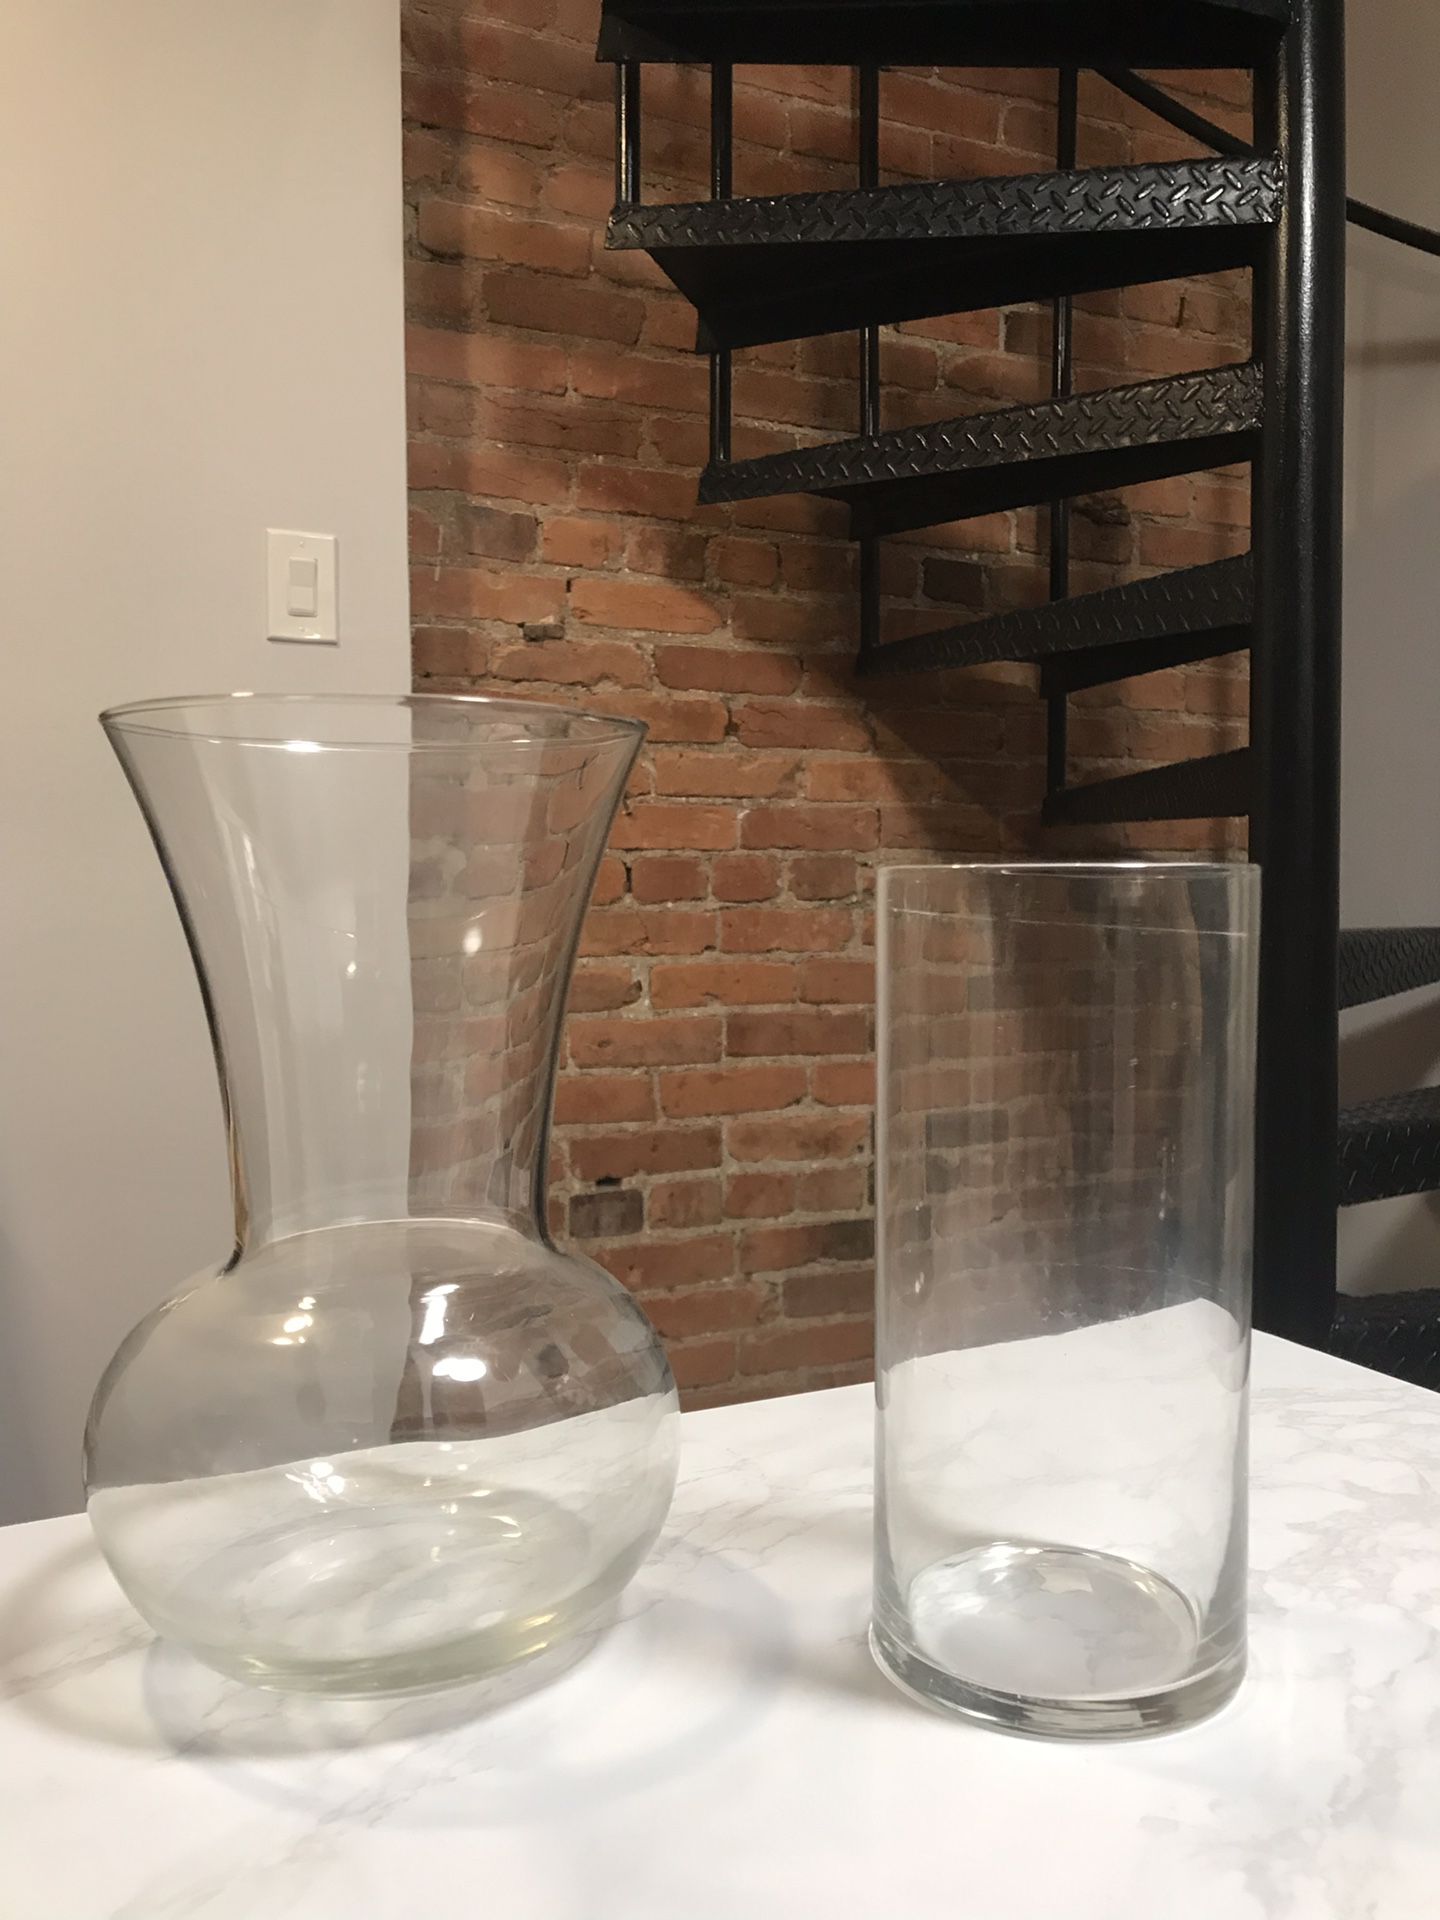 Two glass flower vases